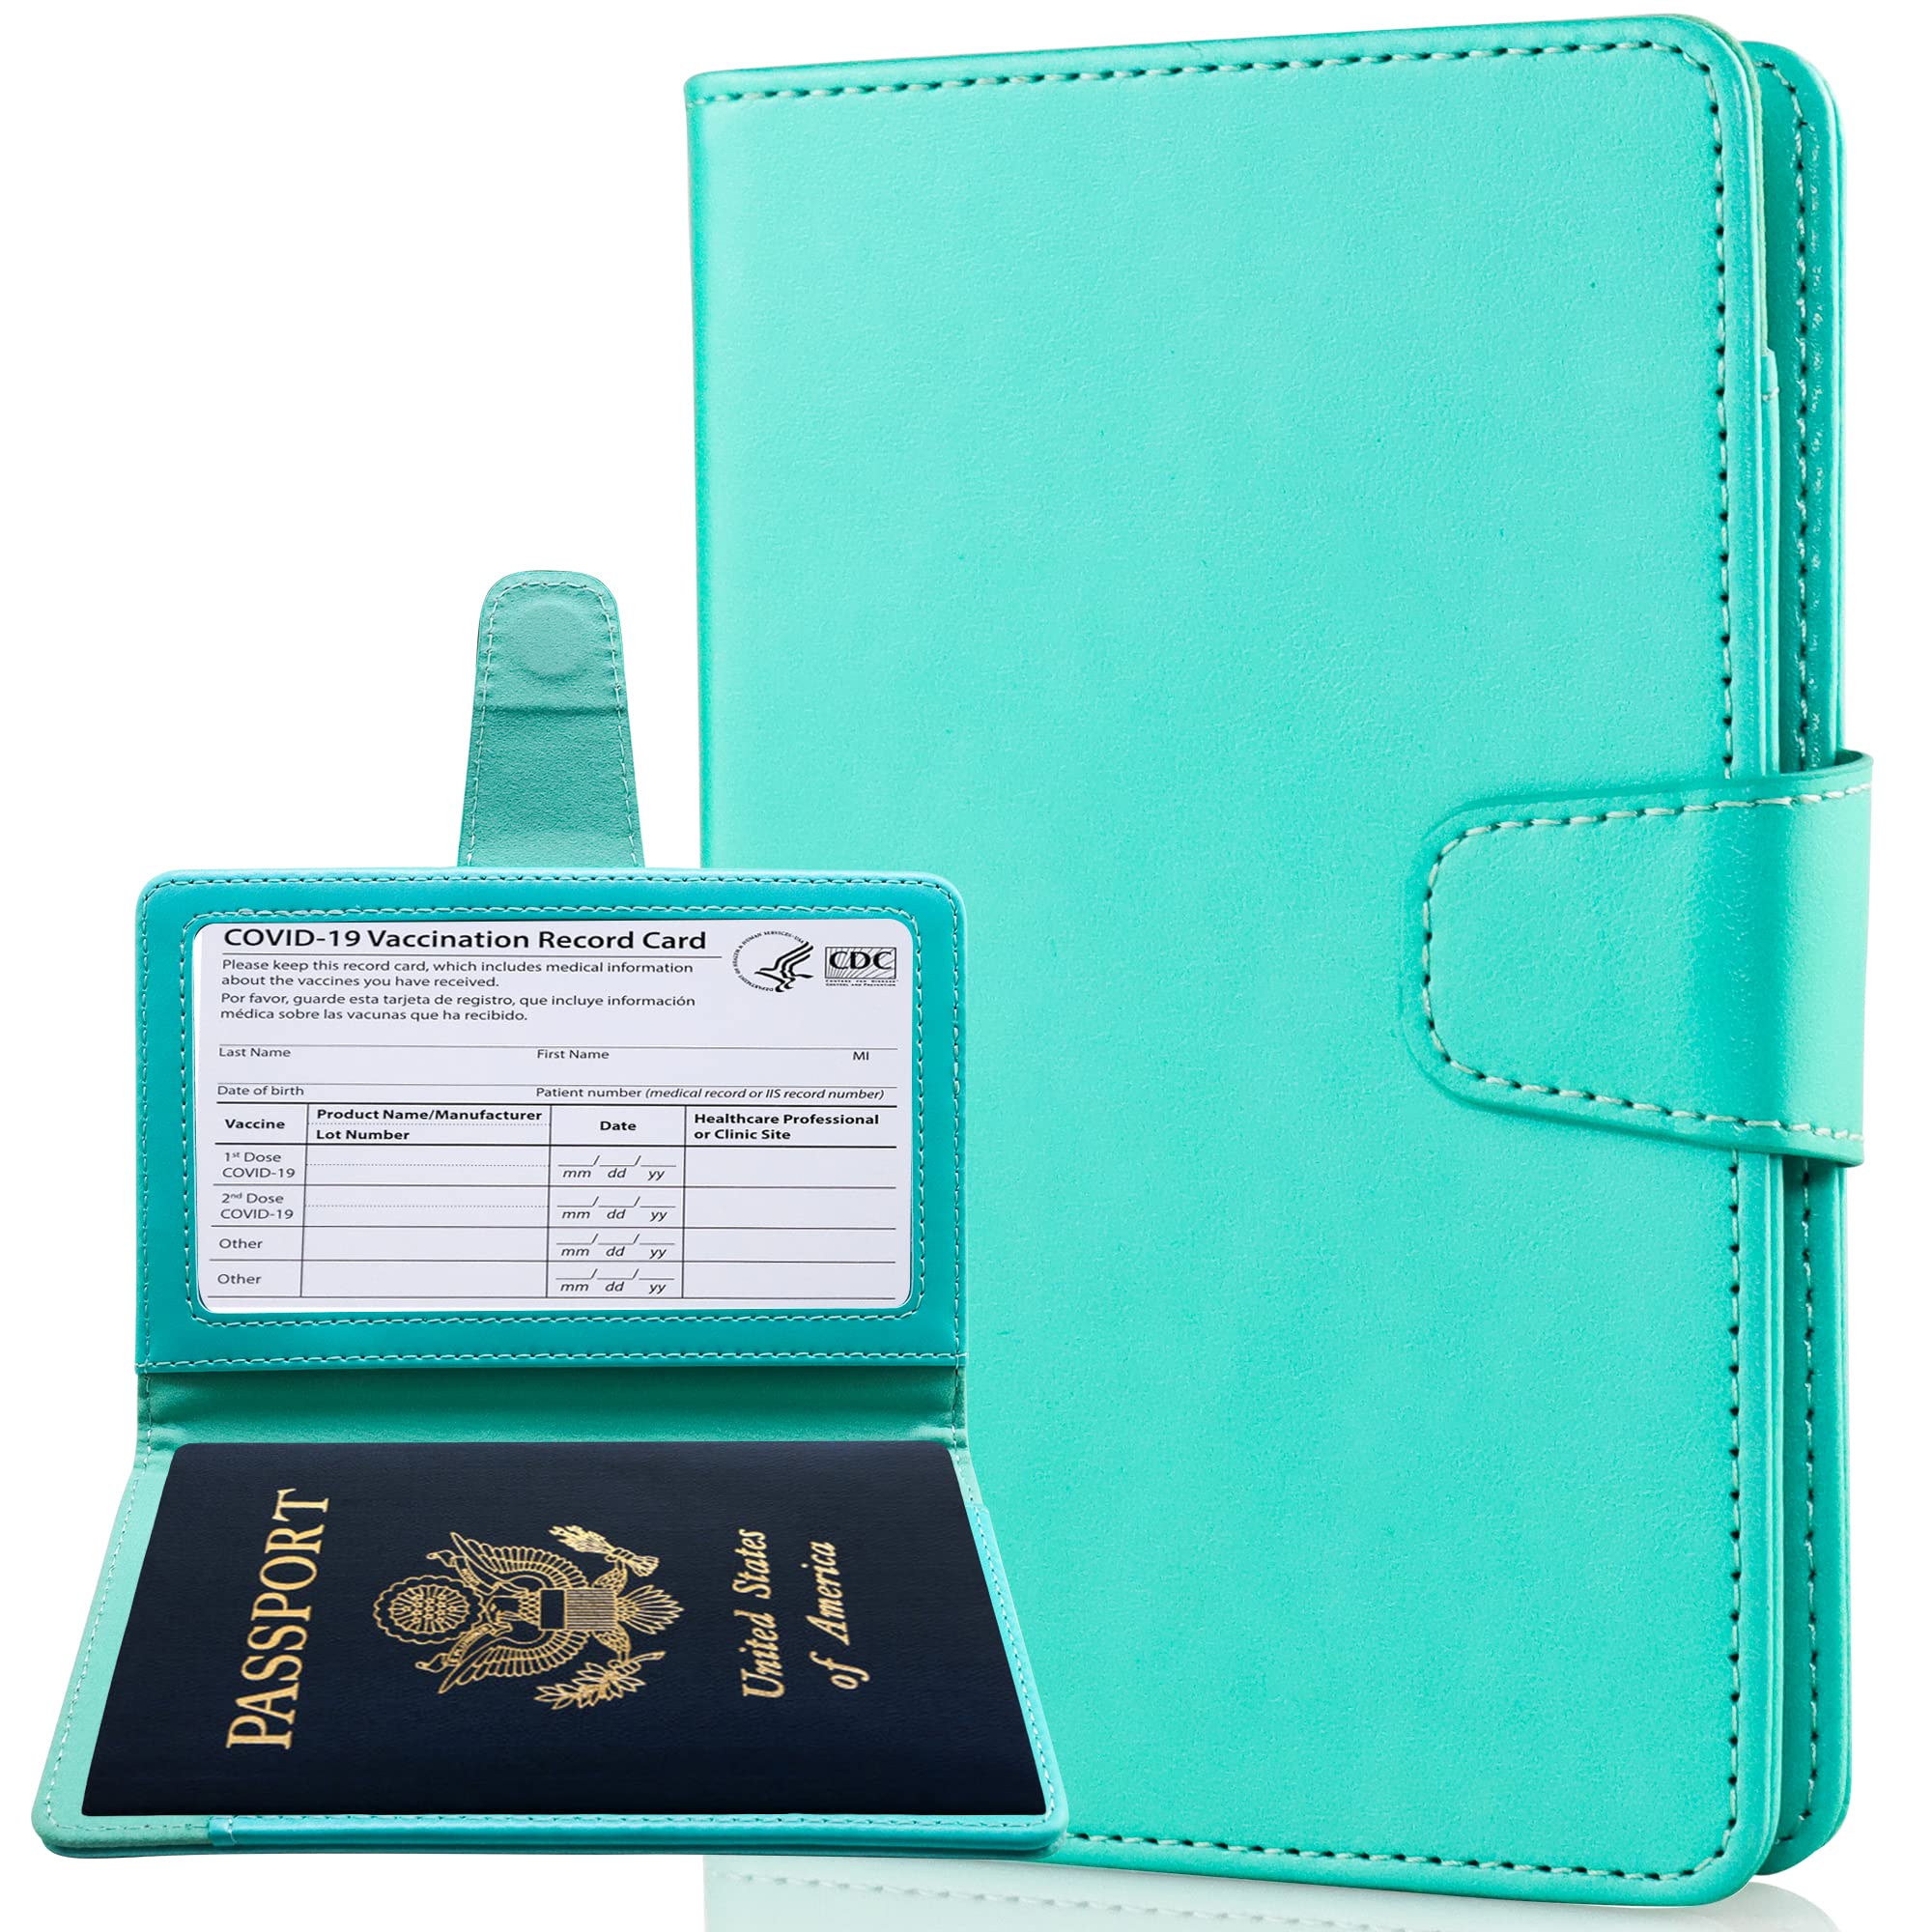 [Teskyer] パスポートケース スキミング防止 パスポートカバー 出張用 海外旅行 高級PU パスポート カードケース 多機能収納ポケット付き (グリーン)